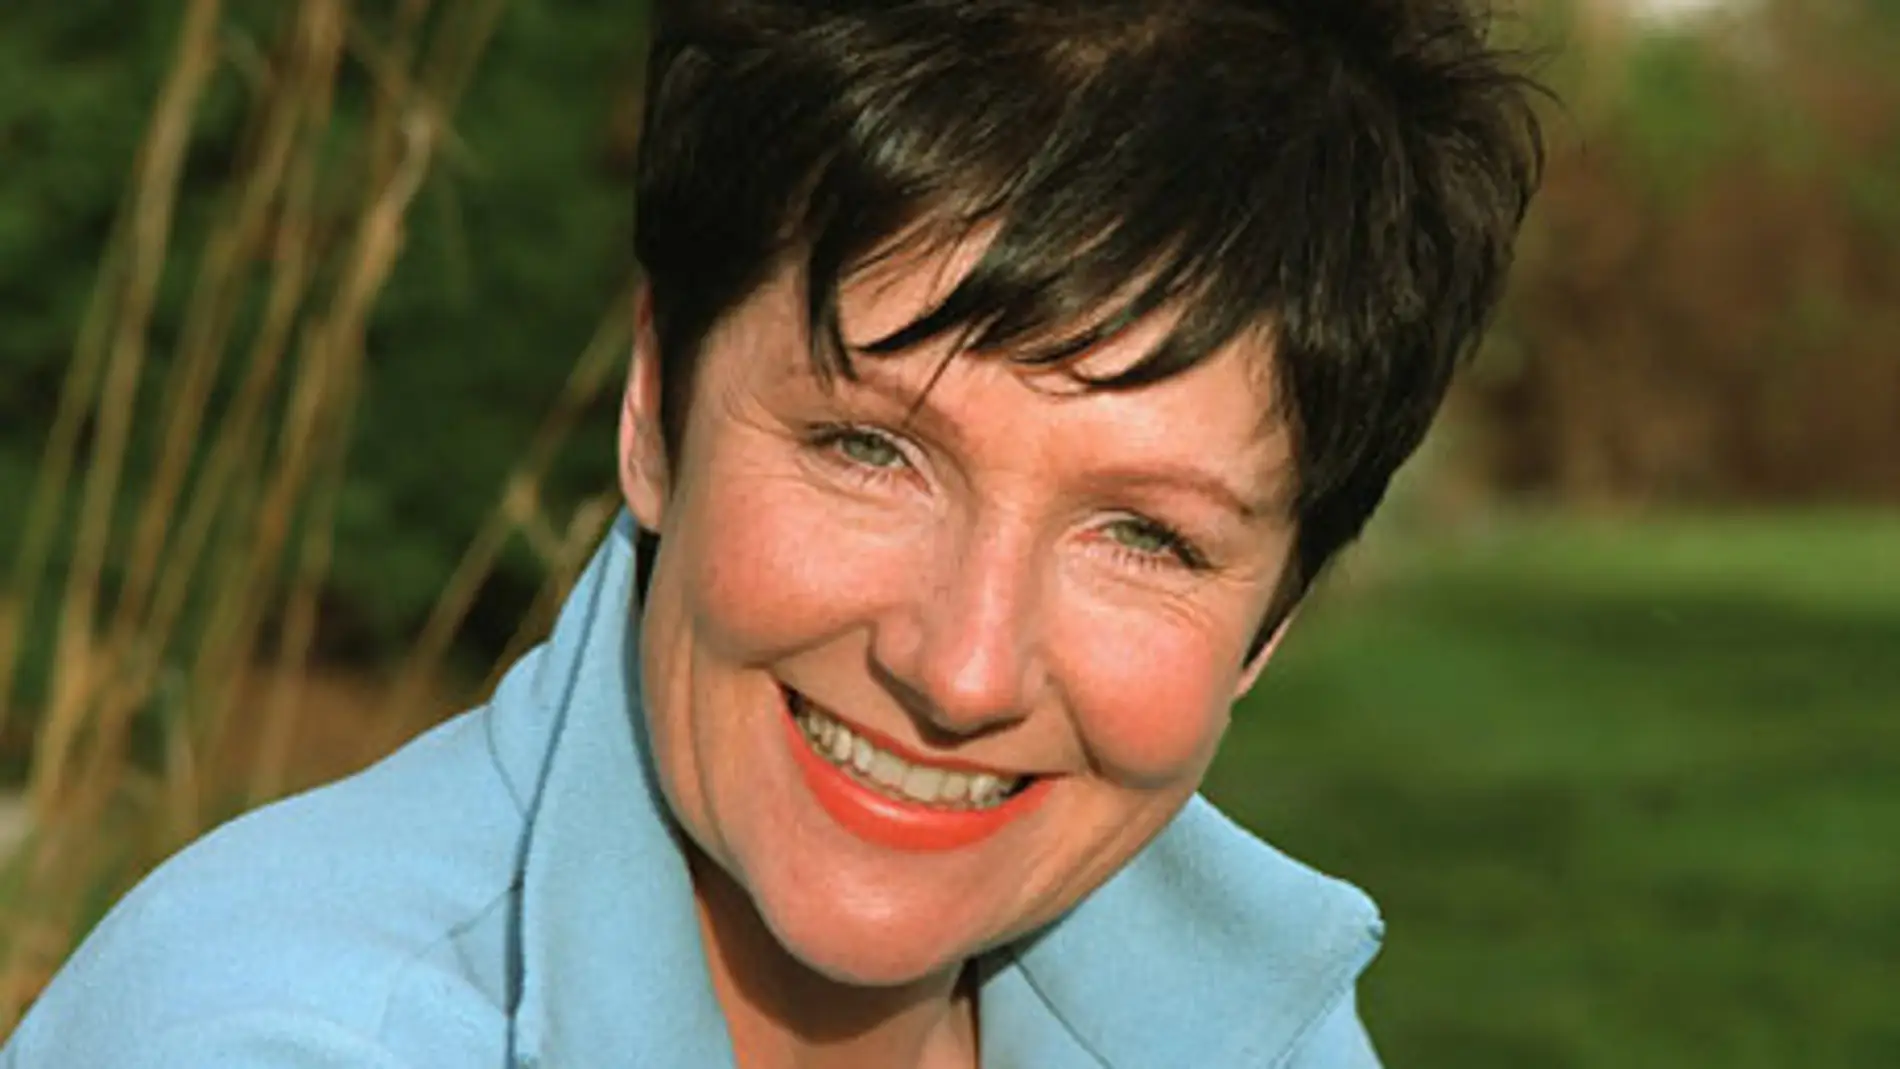 Miriam O'Reilly